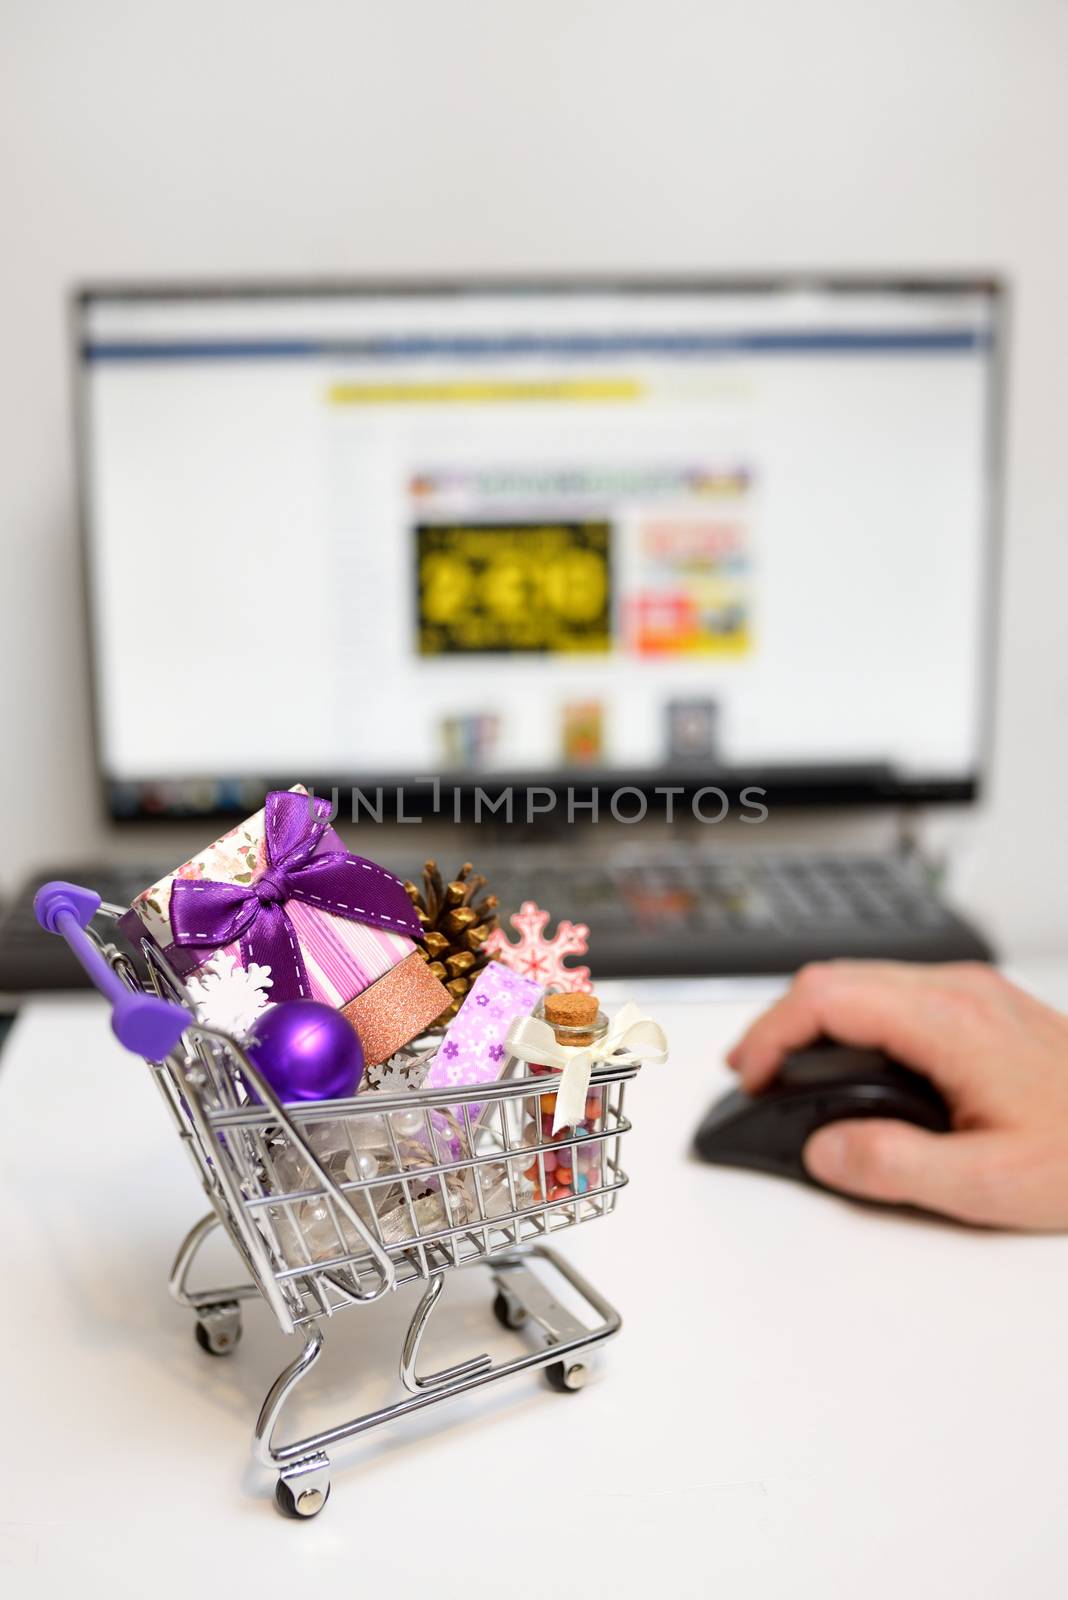 Online Christmas Shopping Cart on desk